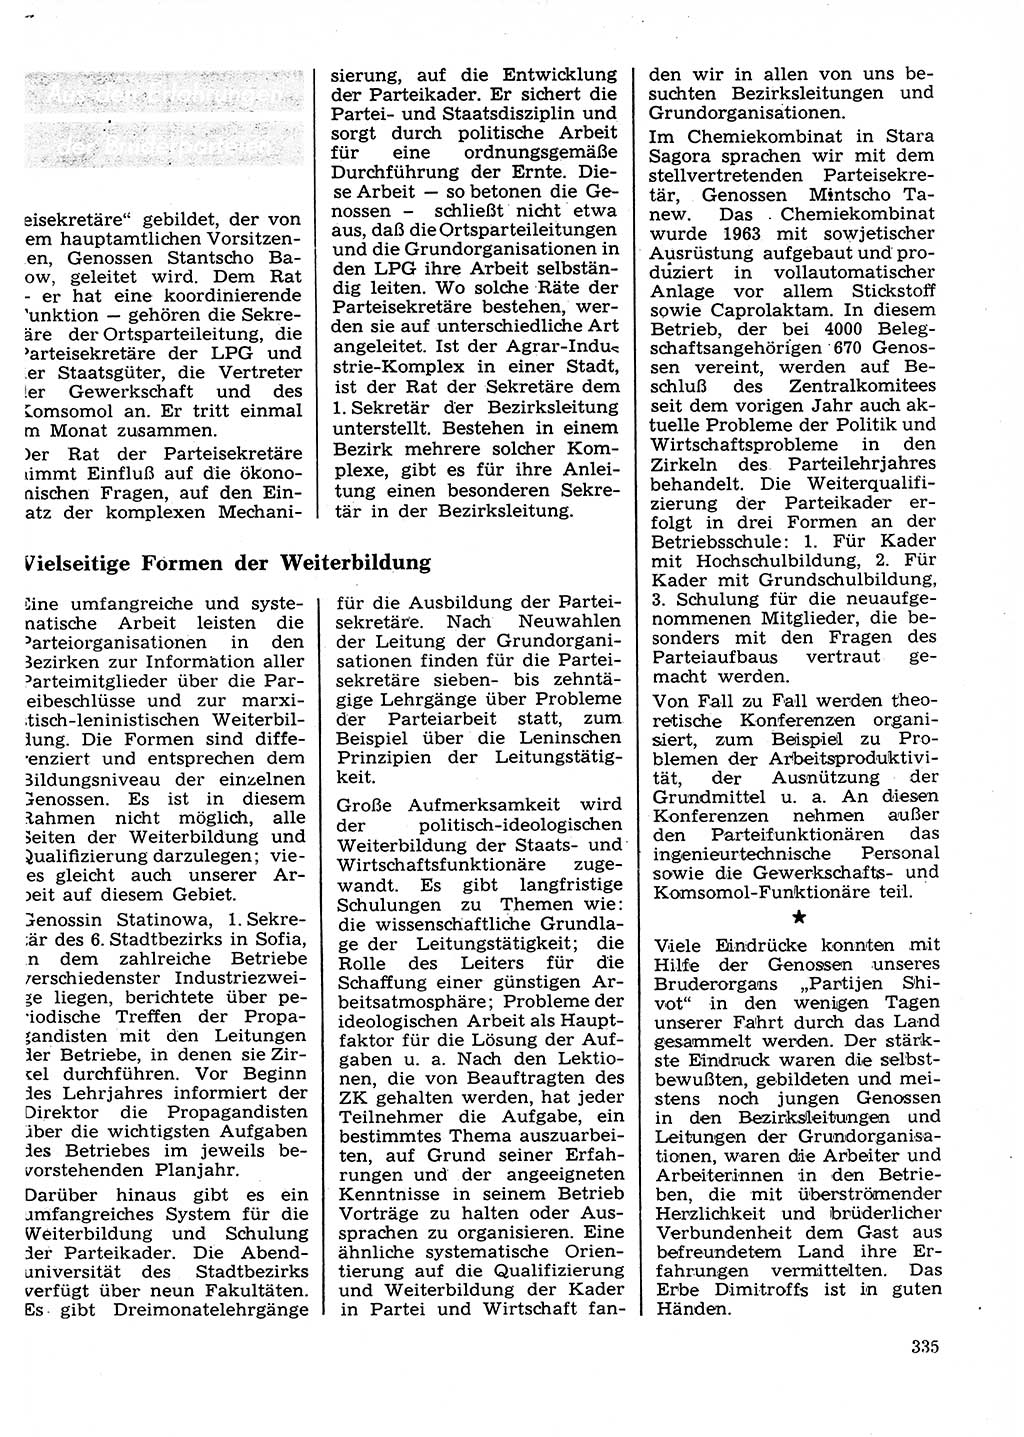 Neuer Weg (NW), Organ des Zentralkomitees (ZK) der SED (Sozialistische Einheitspartei Deutschlands) für Fragen des Parteilebens, 27. Jahrgang [Deutsche Demokratische Republik (DDR)] 1972, Seite 335 (NW ZK SED DDR 1972, S. 335)